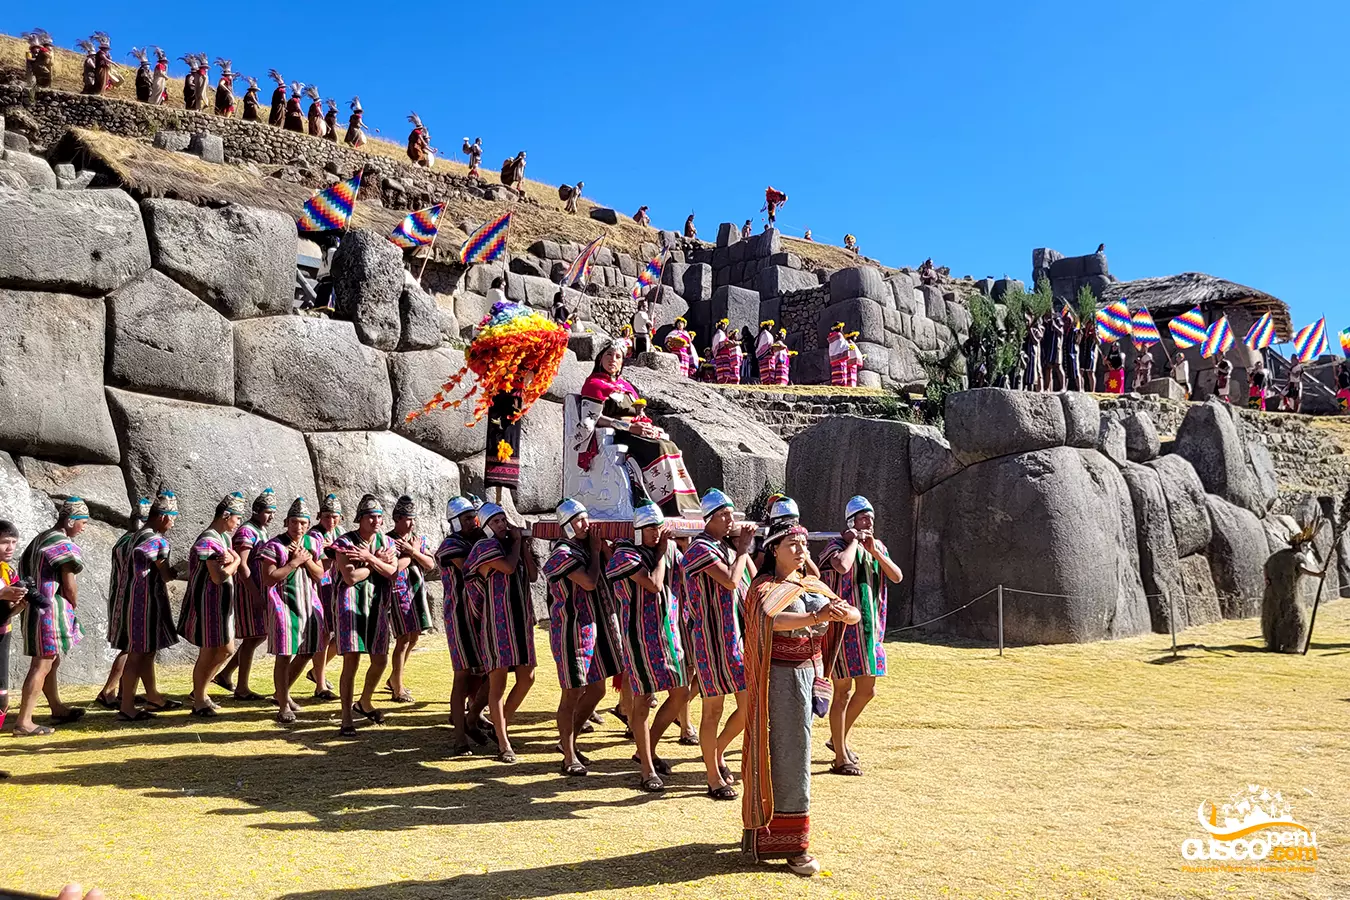 Inti Raymi Fiesta Del Sol. Fonte: CuscoPeru.com